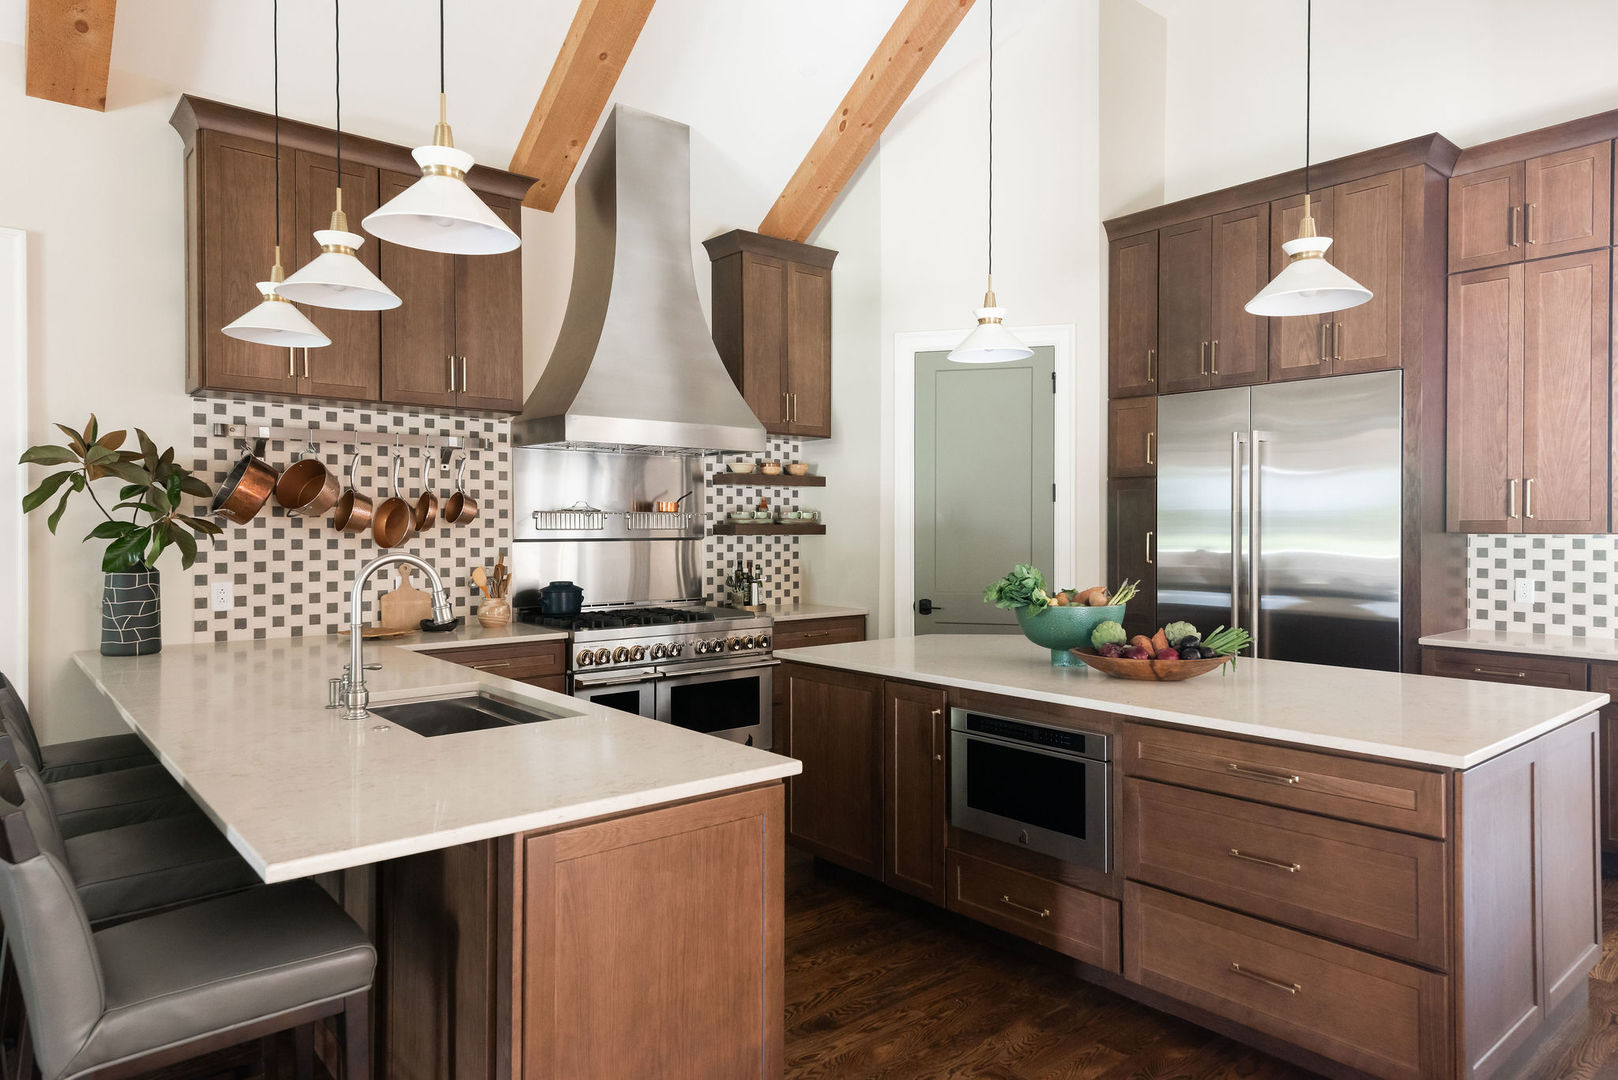 Kitchen design idea featuring beautiful kitchen sinks, cottage kitchen concepts, brown kitchen cabinets, marble kitchen countertops, marble backsplash designs